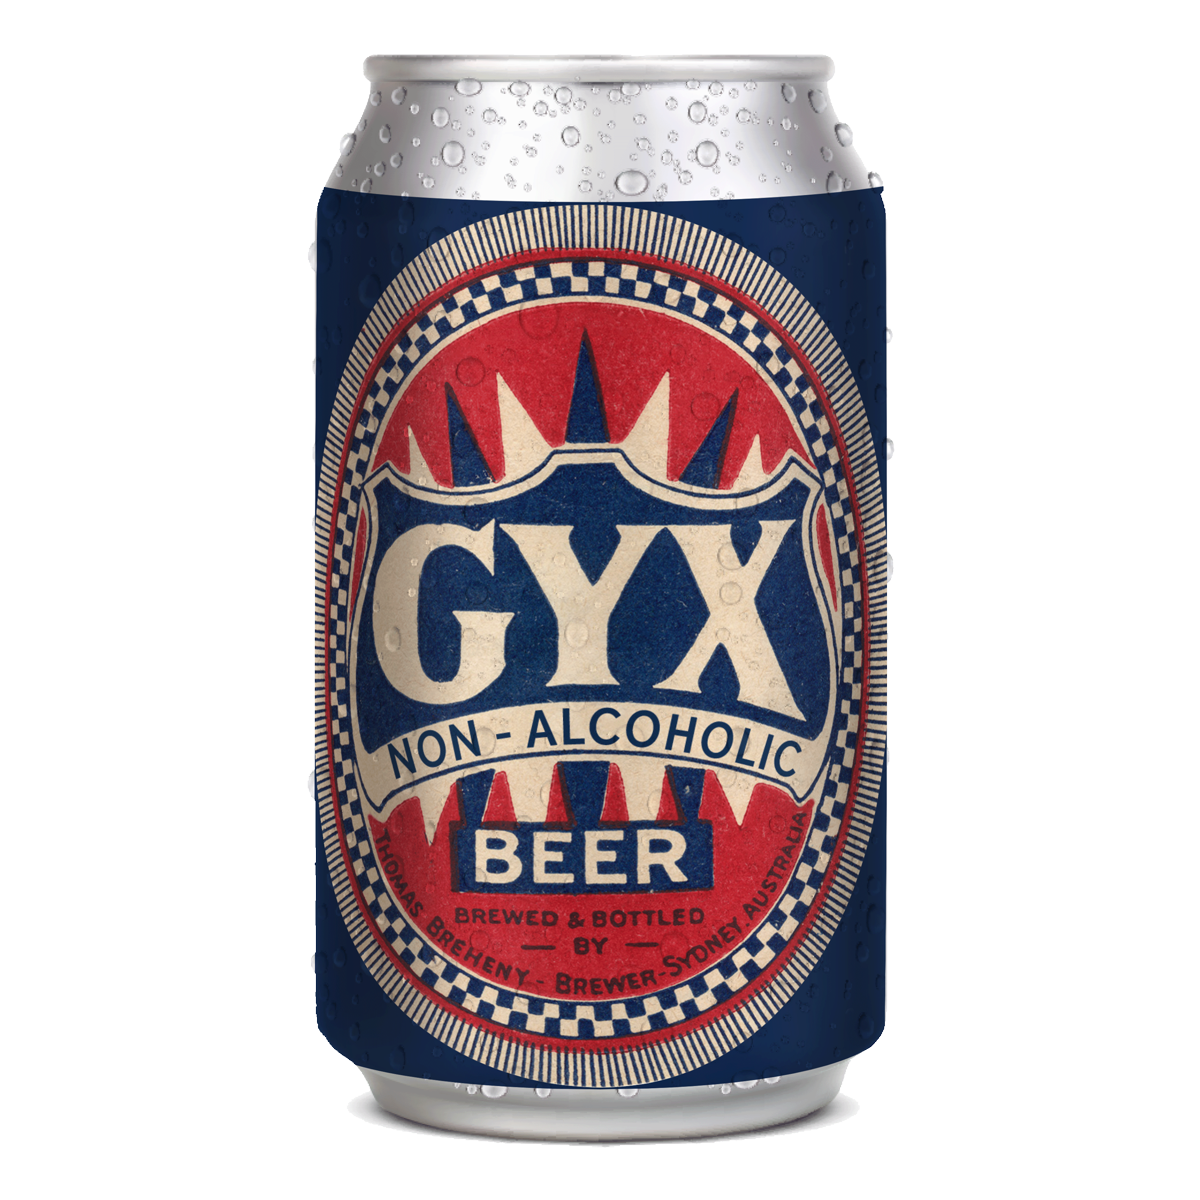 Gyx (Non Alcoholic) (24 X 355ml Cans)